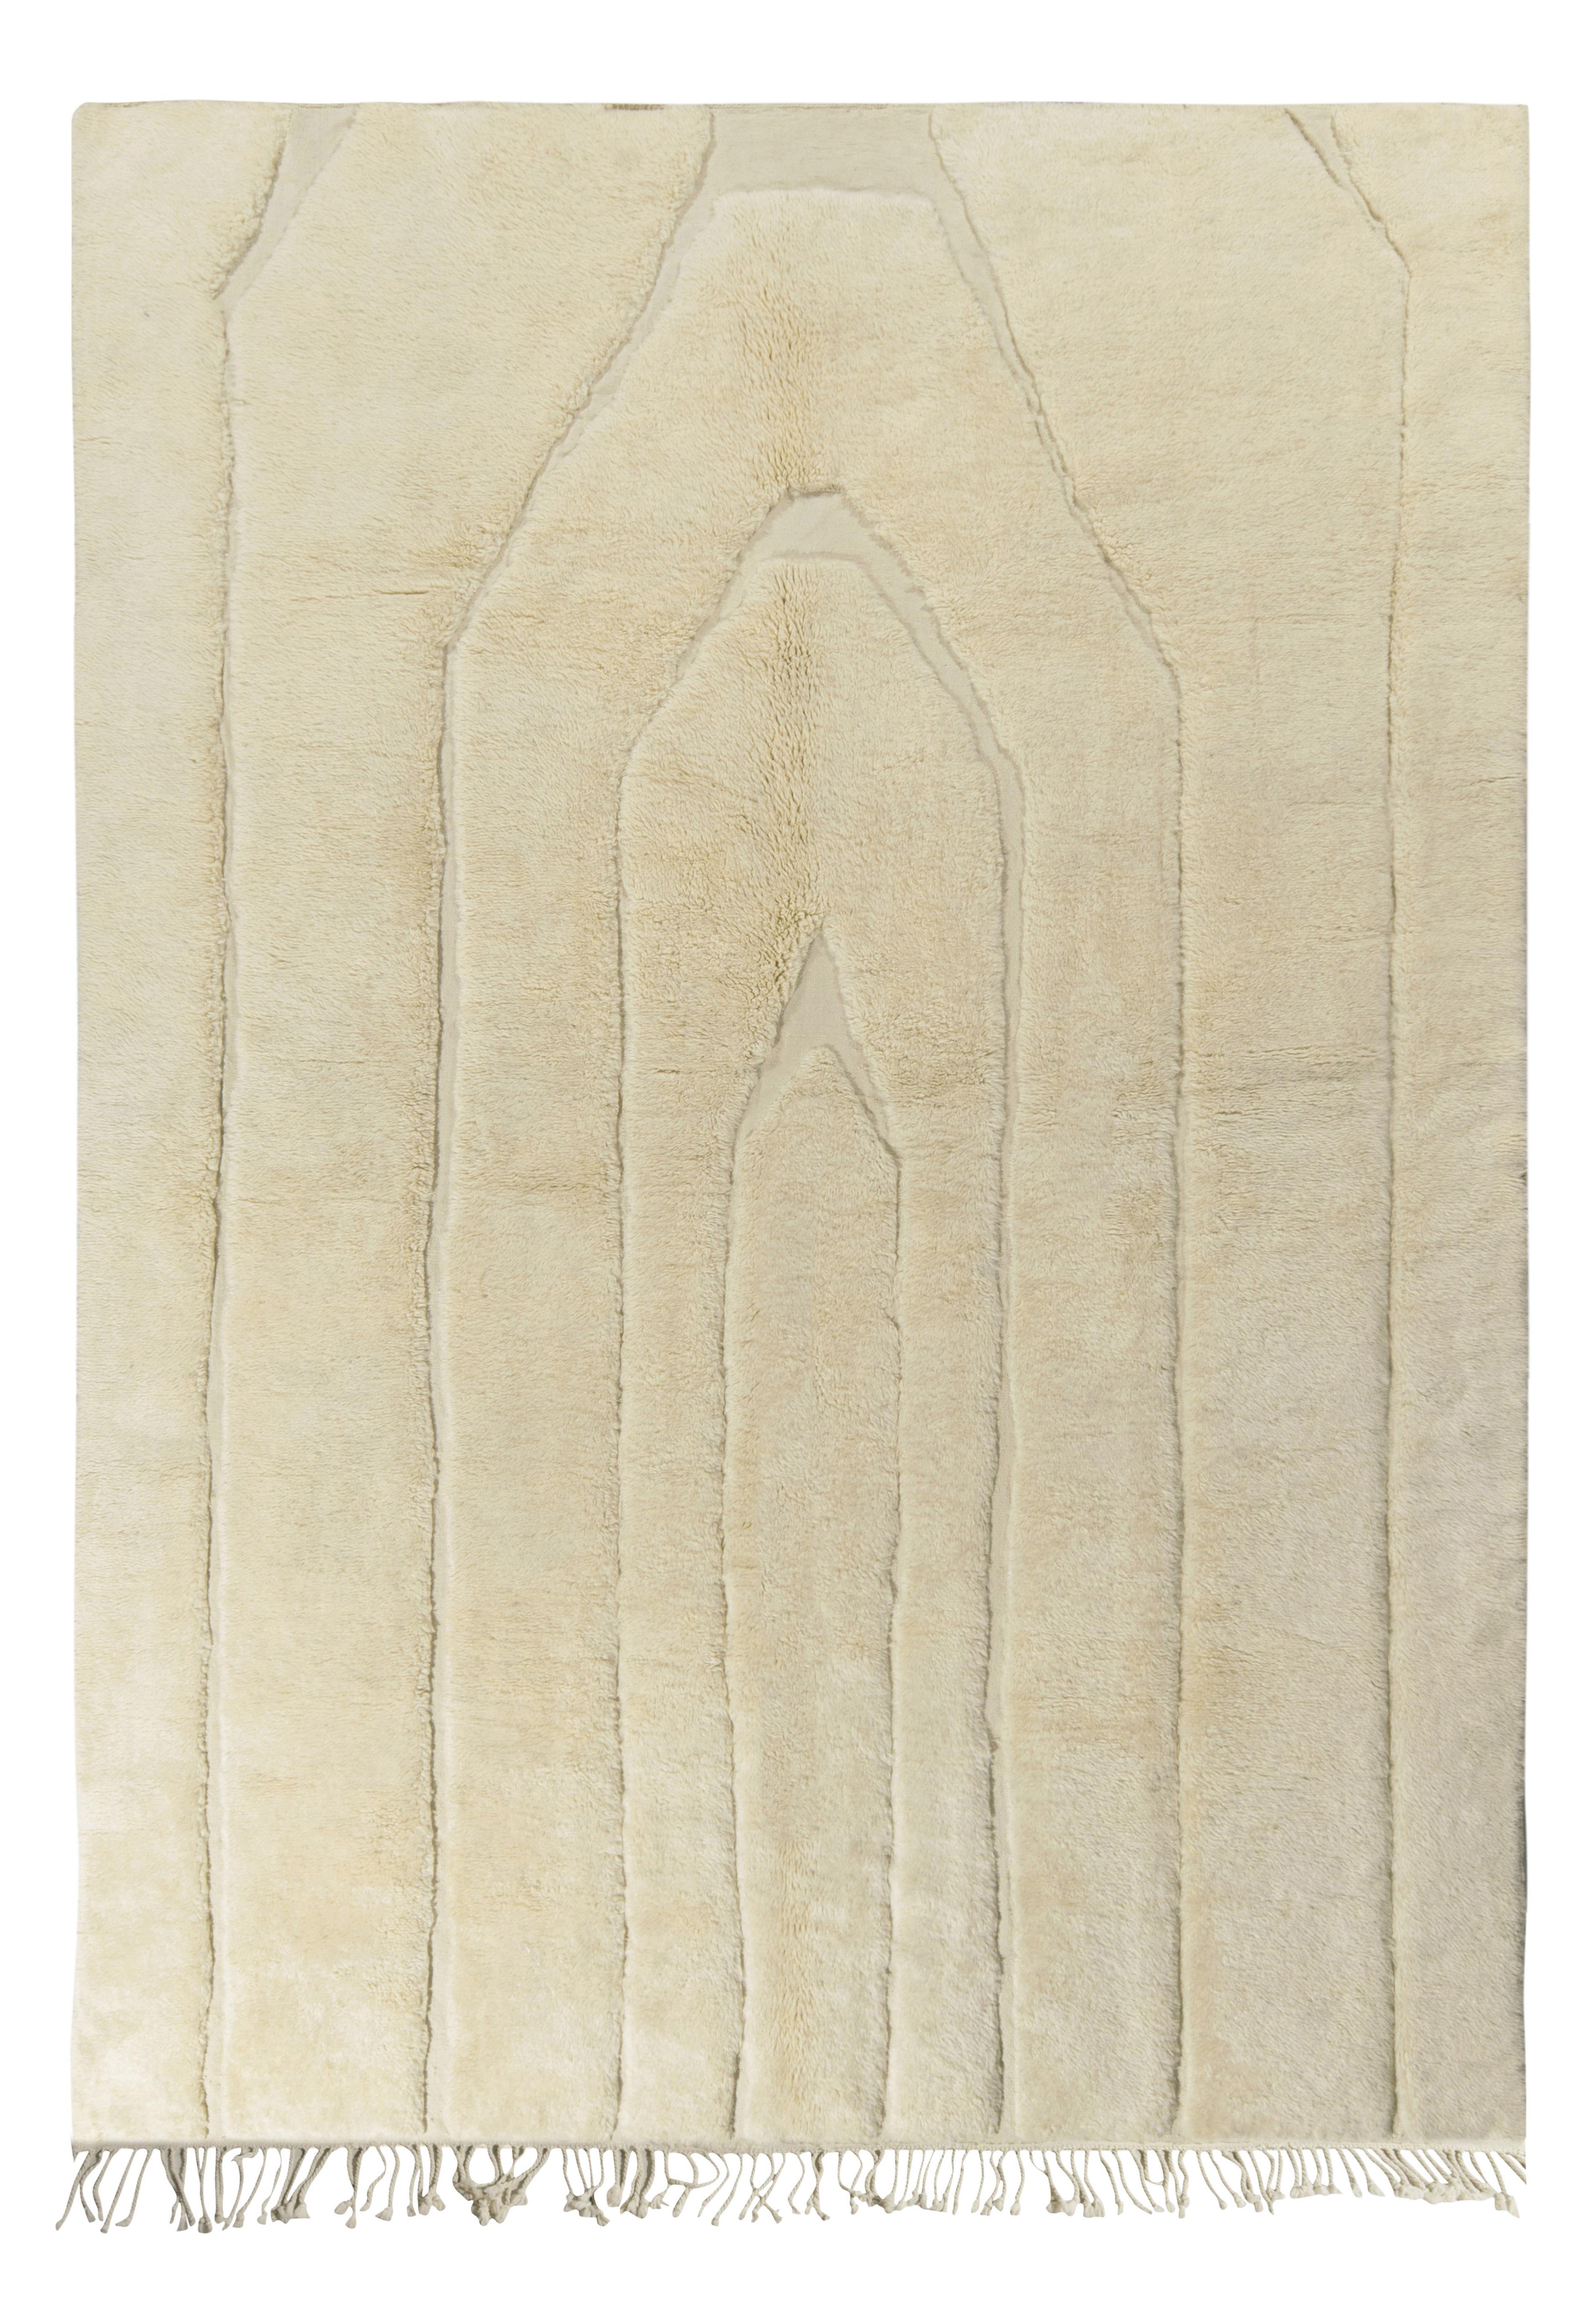 Marokkanischer Teppich von Teppich & Kilims in Beige-Weiß mit geometrischem Hoch-Low-Muster